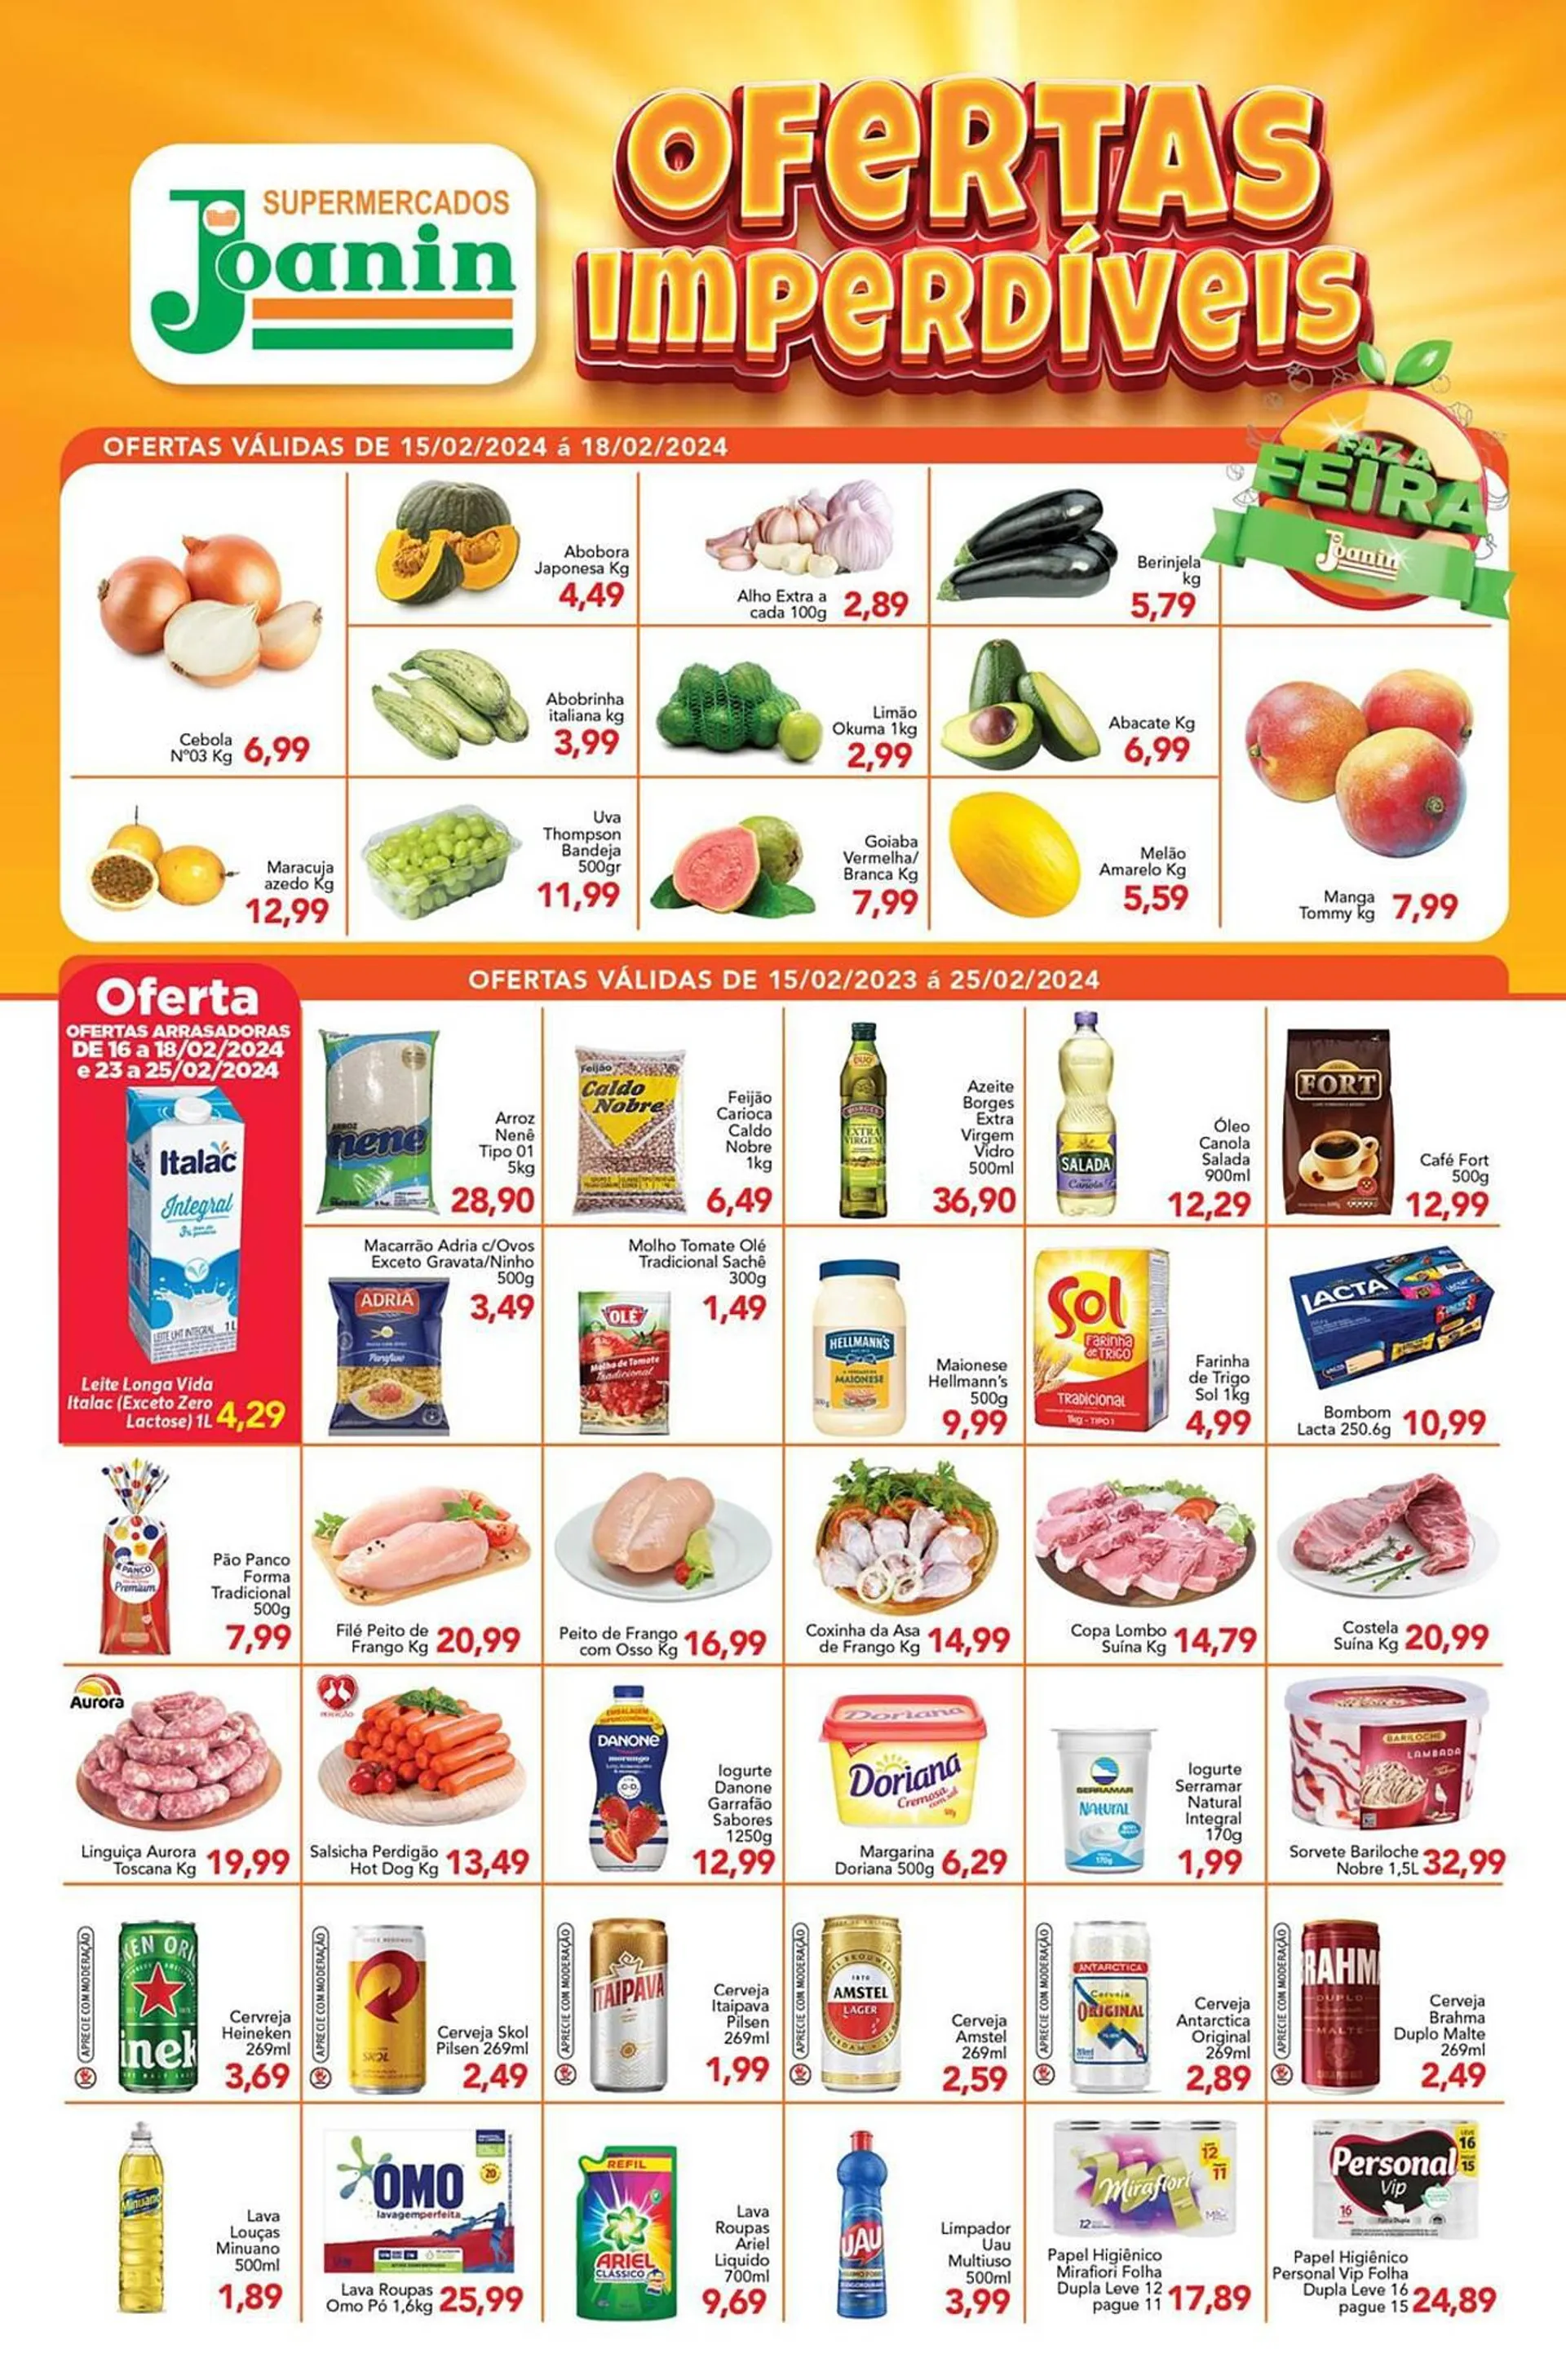 Encarte de Catálogo Supermercados Joanin 16 de fevereiro até 25 de fevereiro 2024 - Pagina 